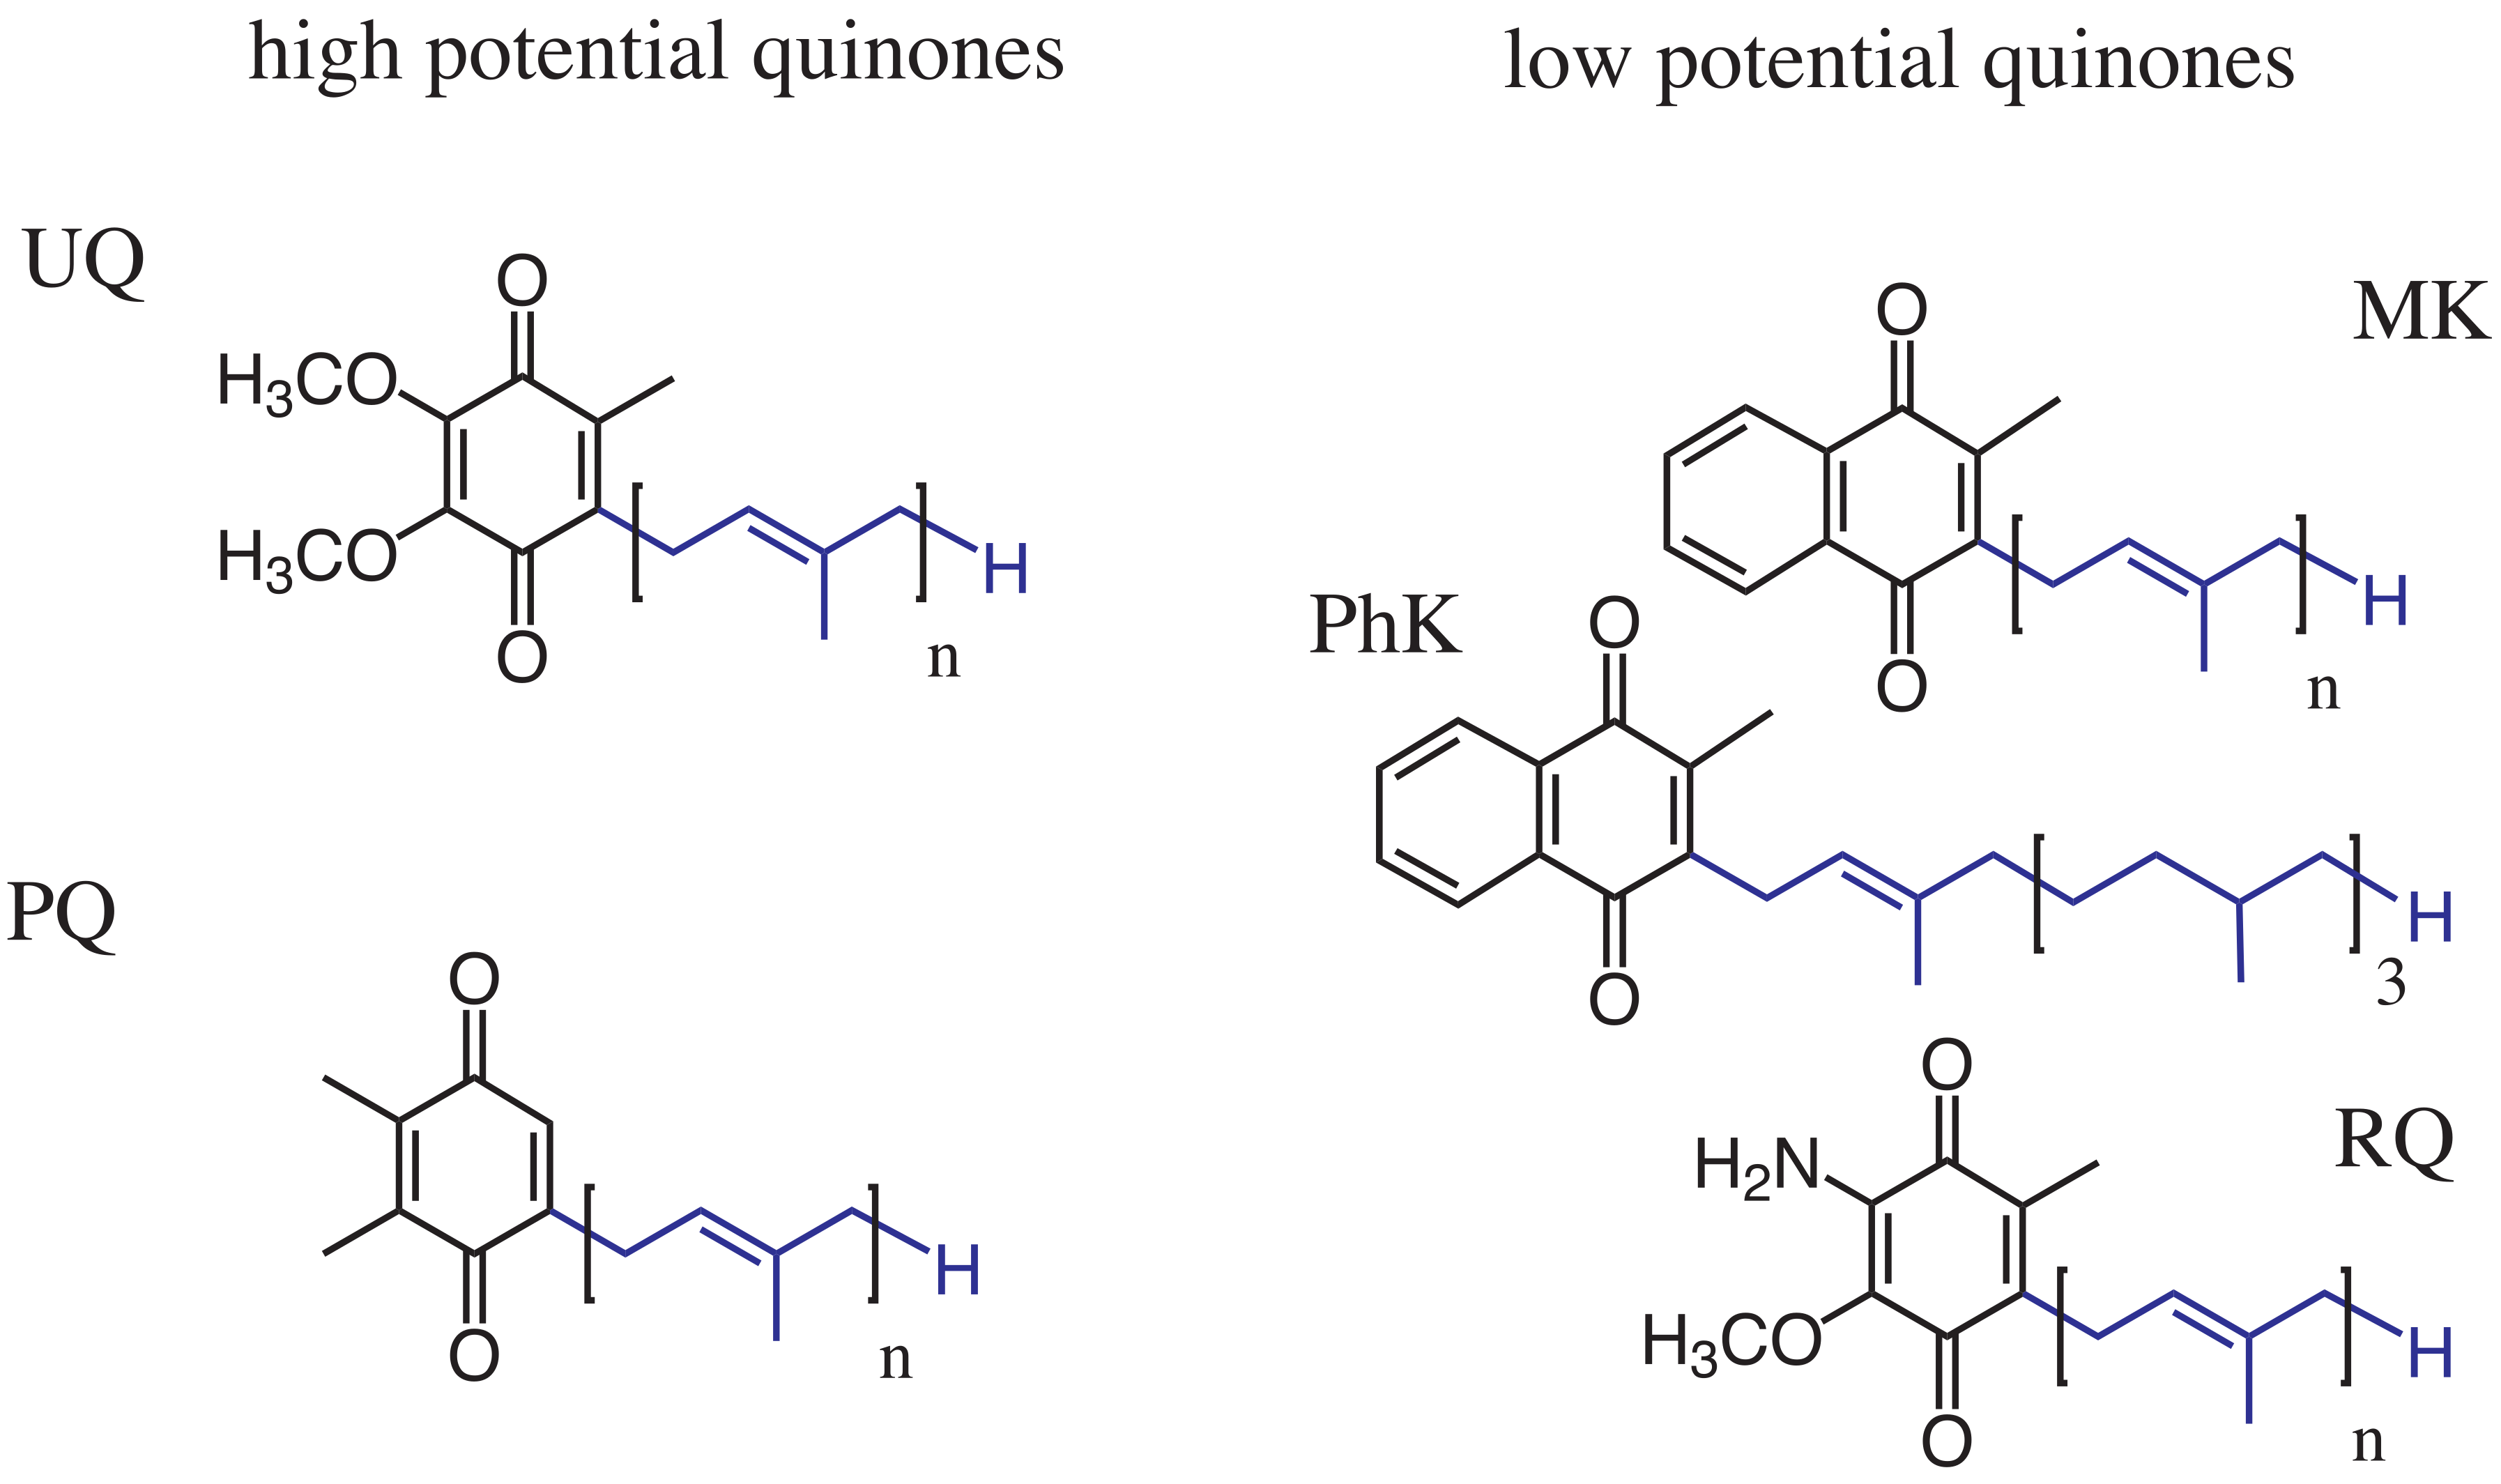 Quinone molecules